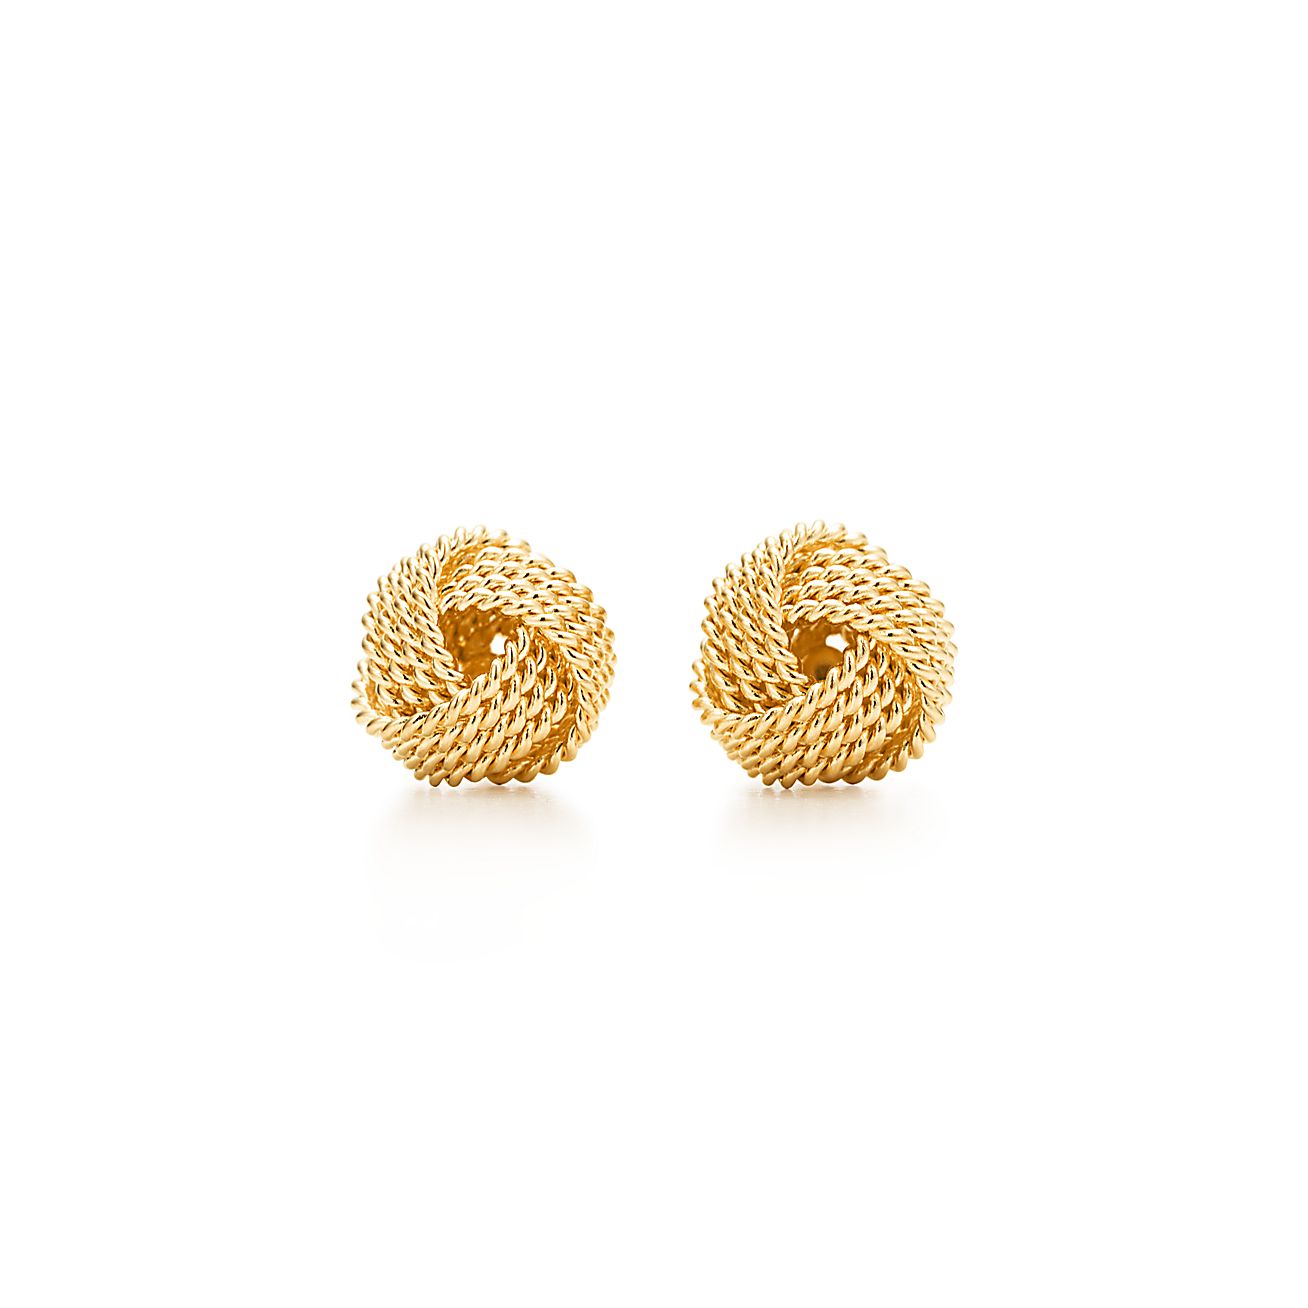 Tiffany Twist knot earrings in 18k gold. | Tiffany & Co.